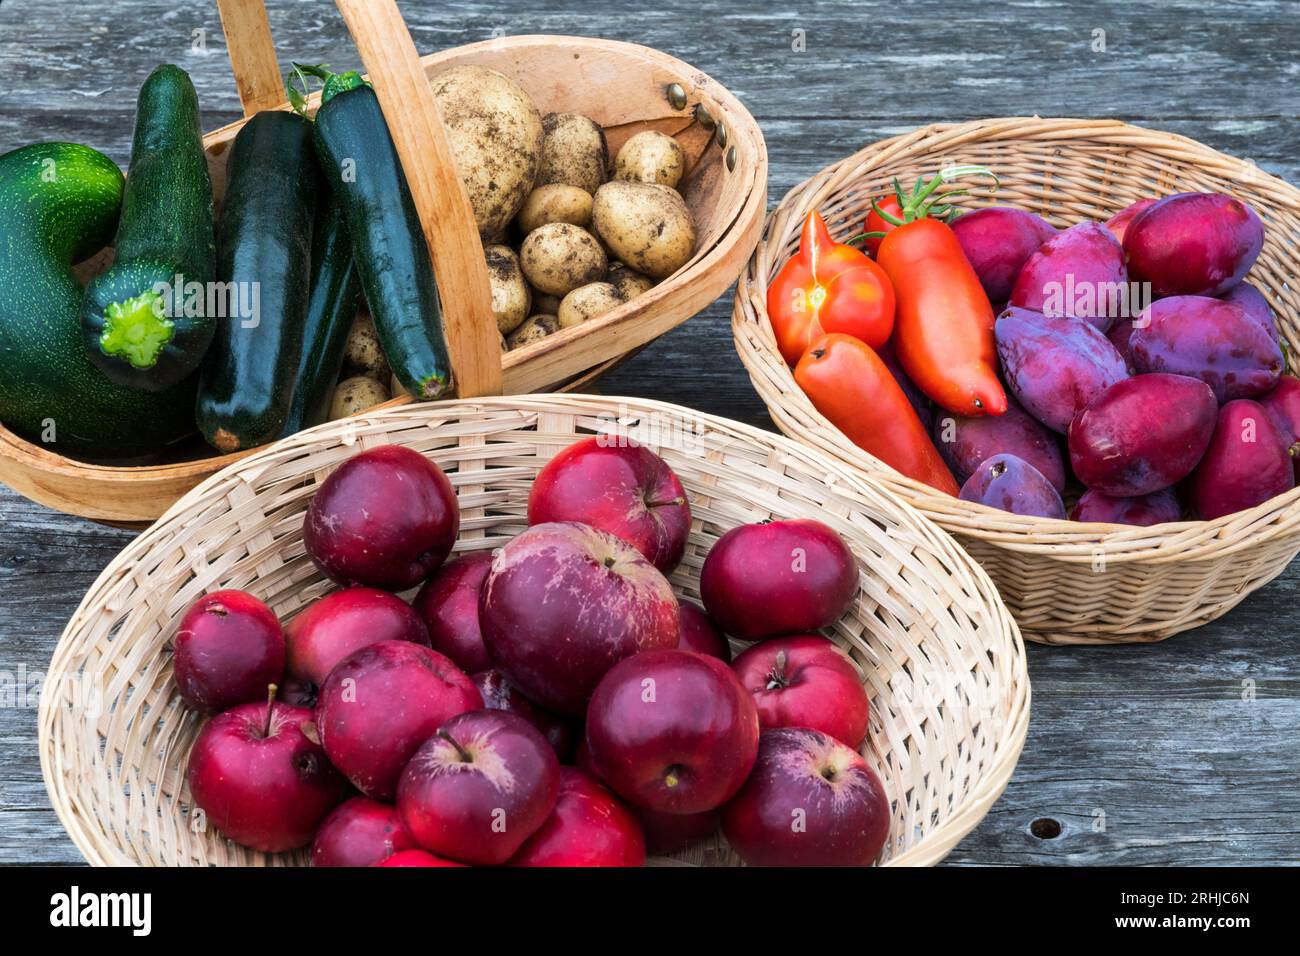 Cestini contenenti frutta e verdura coltivate in casa provenienti dall'orto o dalla produzione. Foto Stock